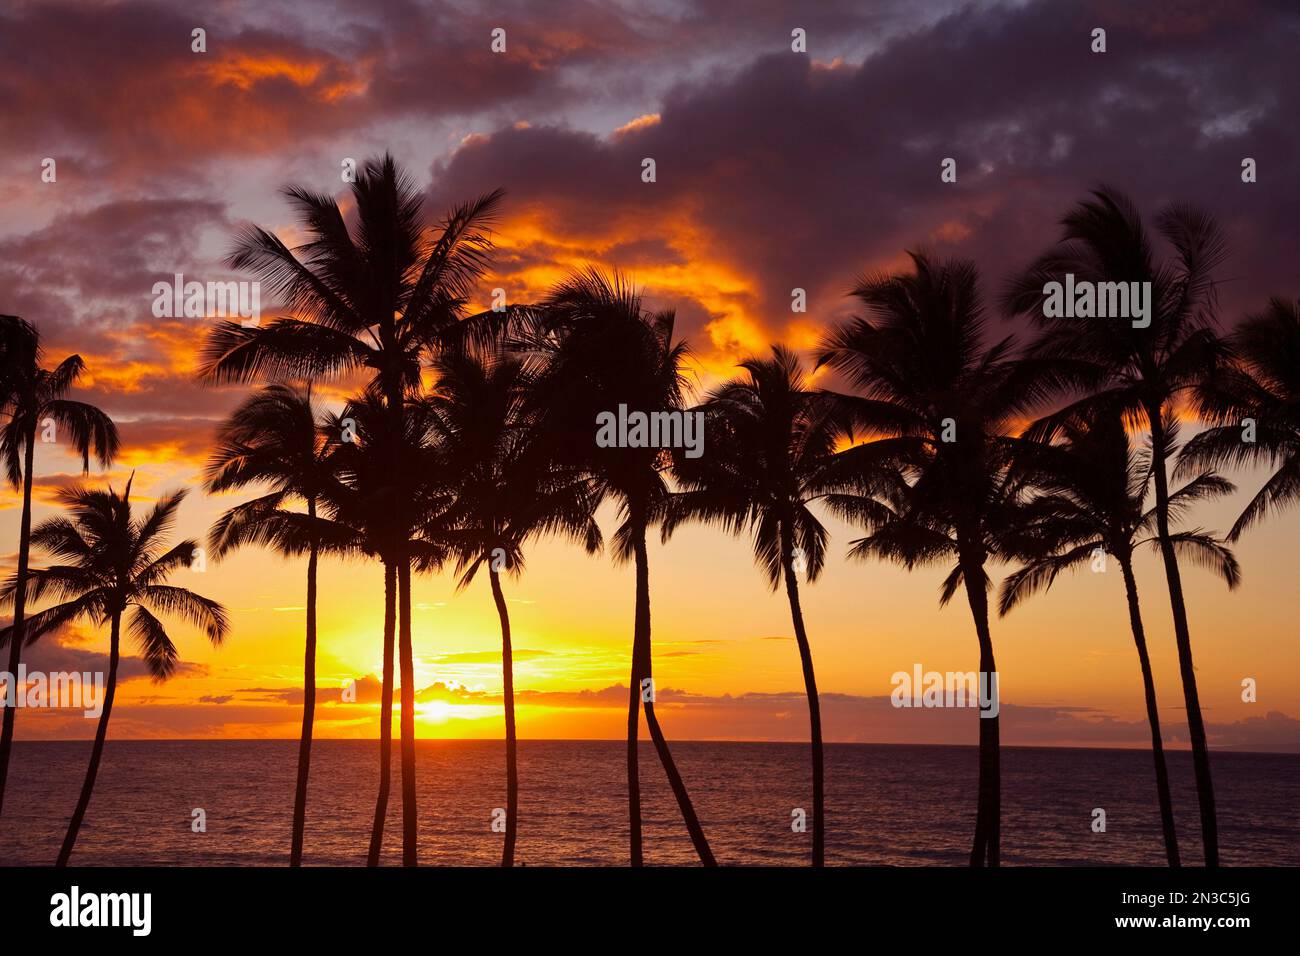 Wunderschöner Sonnenuntergang mit Orange- und Gelbtönen über dem Pazifischen Ozean mit Palmenreihe Silhouetten; Wailea, Maui, Hawaii, Vereinigte Staaten von Amerika Stockfoto